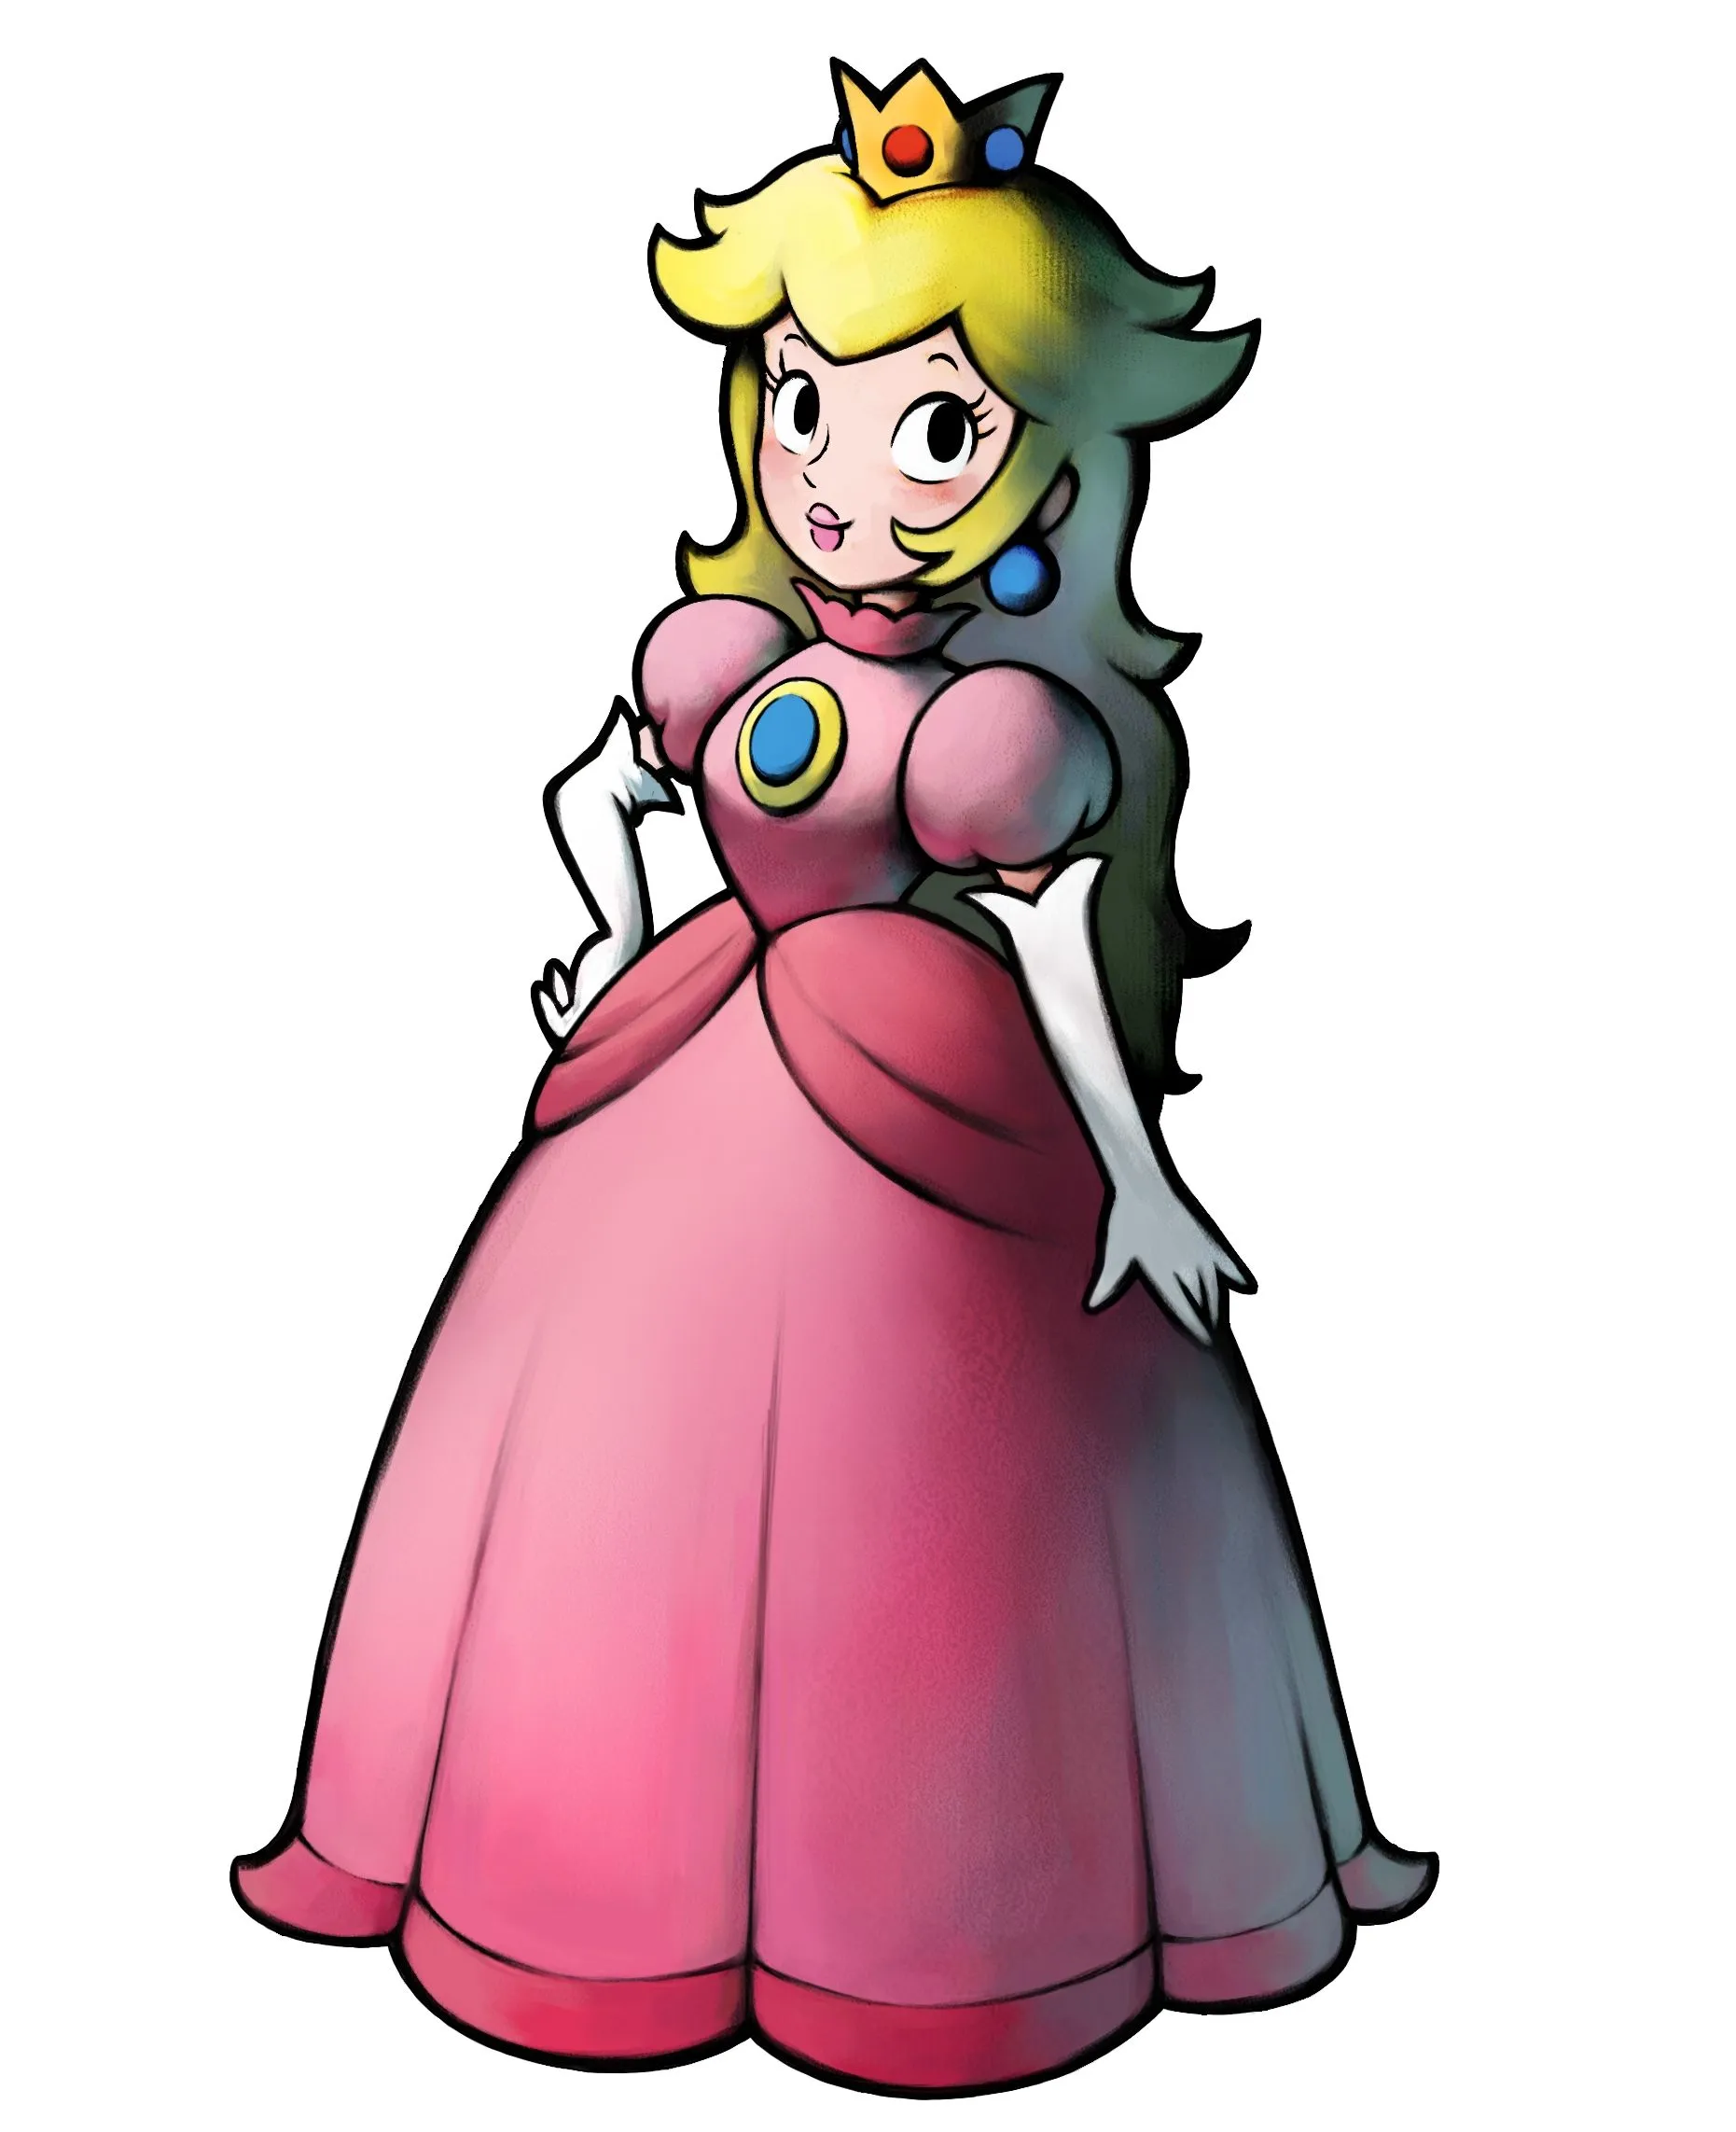 Princess Peach - Mario and Luigi Wiki